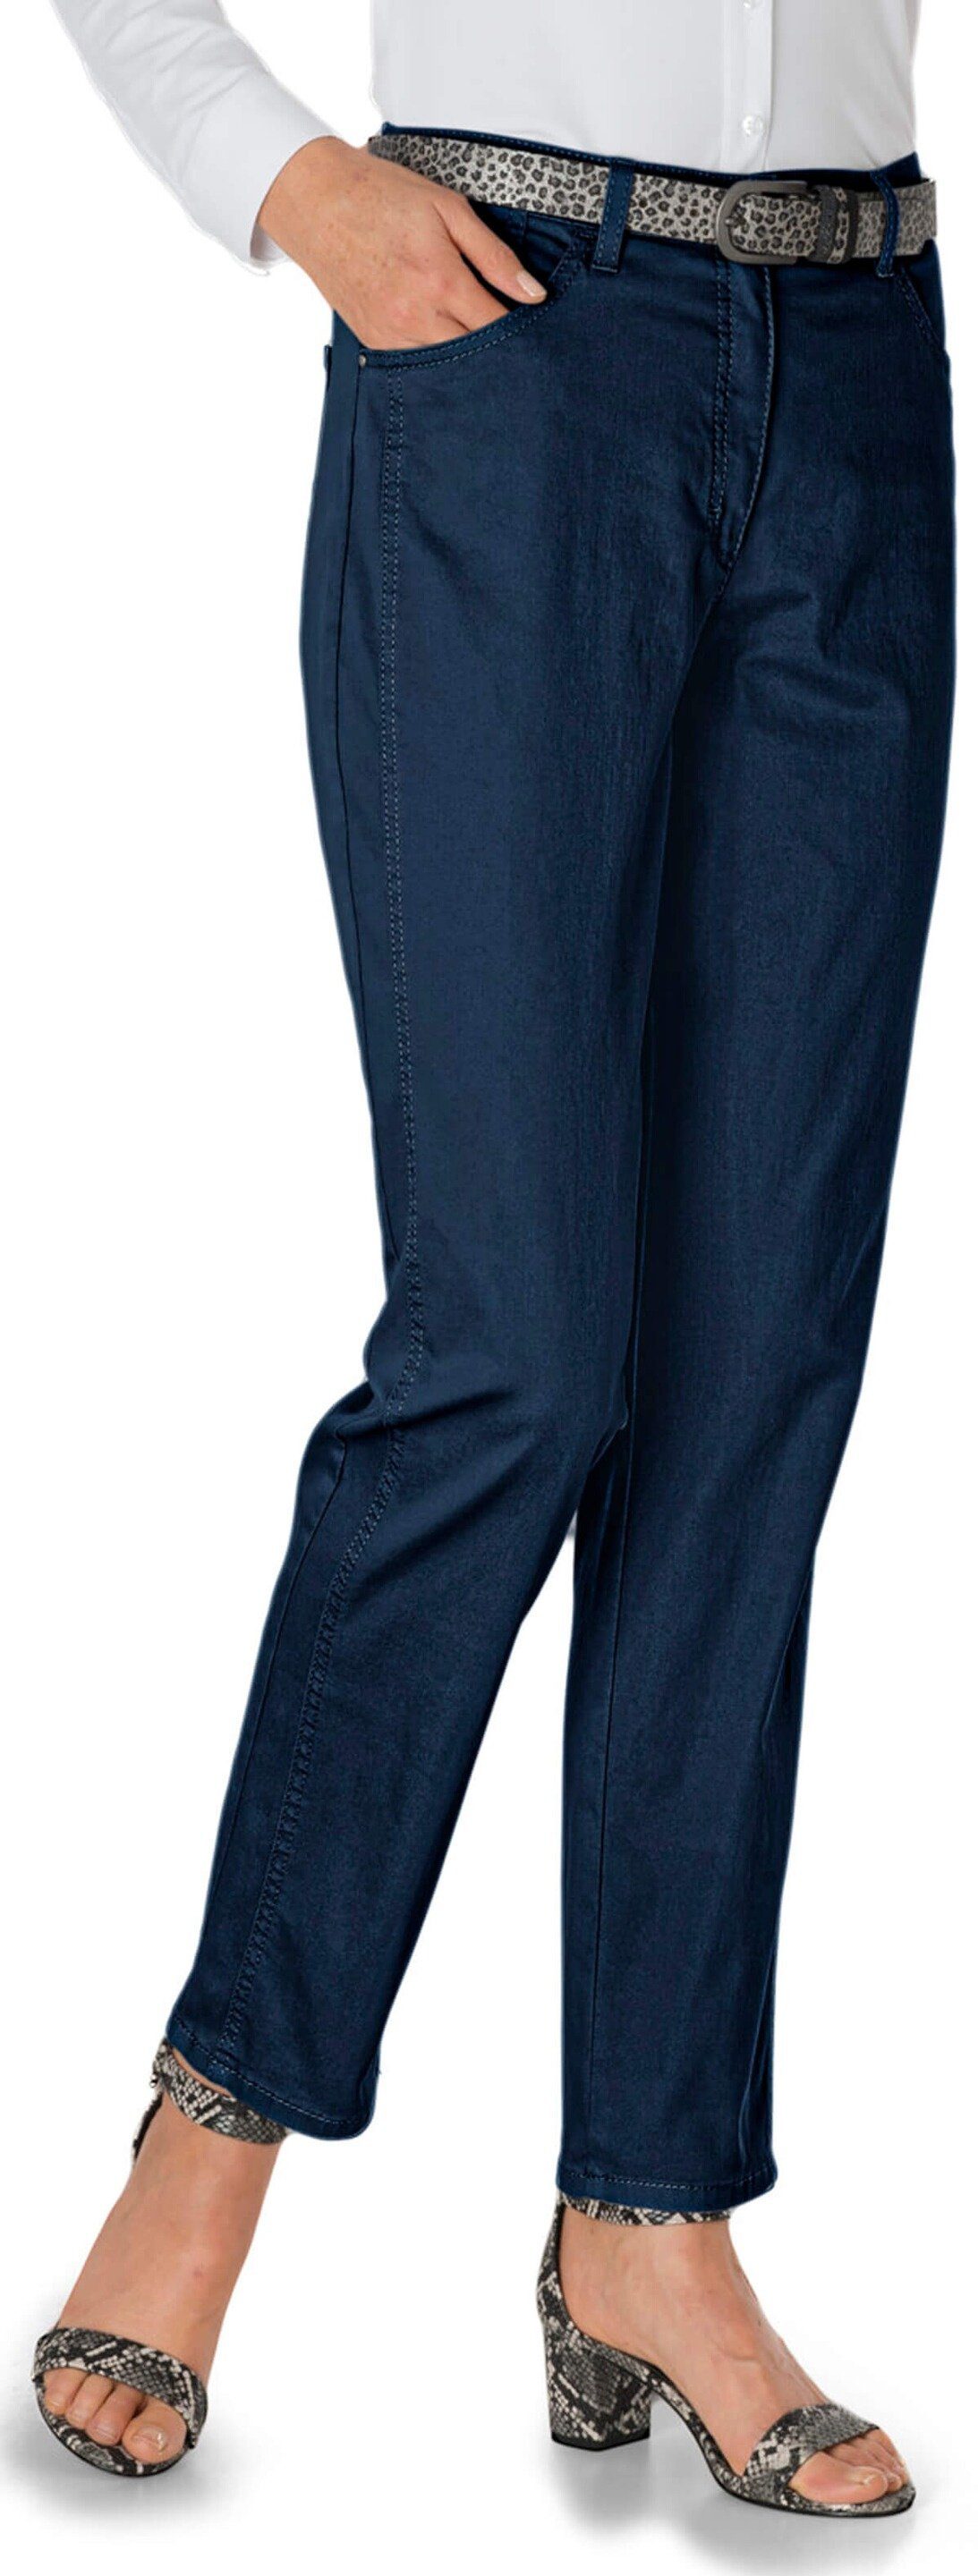 RAPHAELA darkblue 5-Pocket Jeans Fit Comfort Form Regular-fit-Jeans RAPHAELA BRAX BY BRAX by Corry